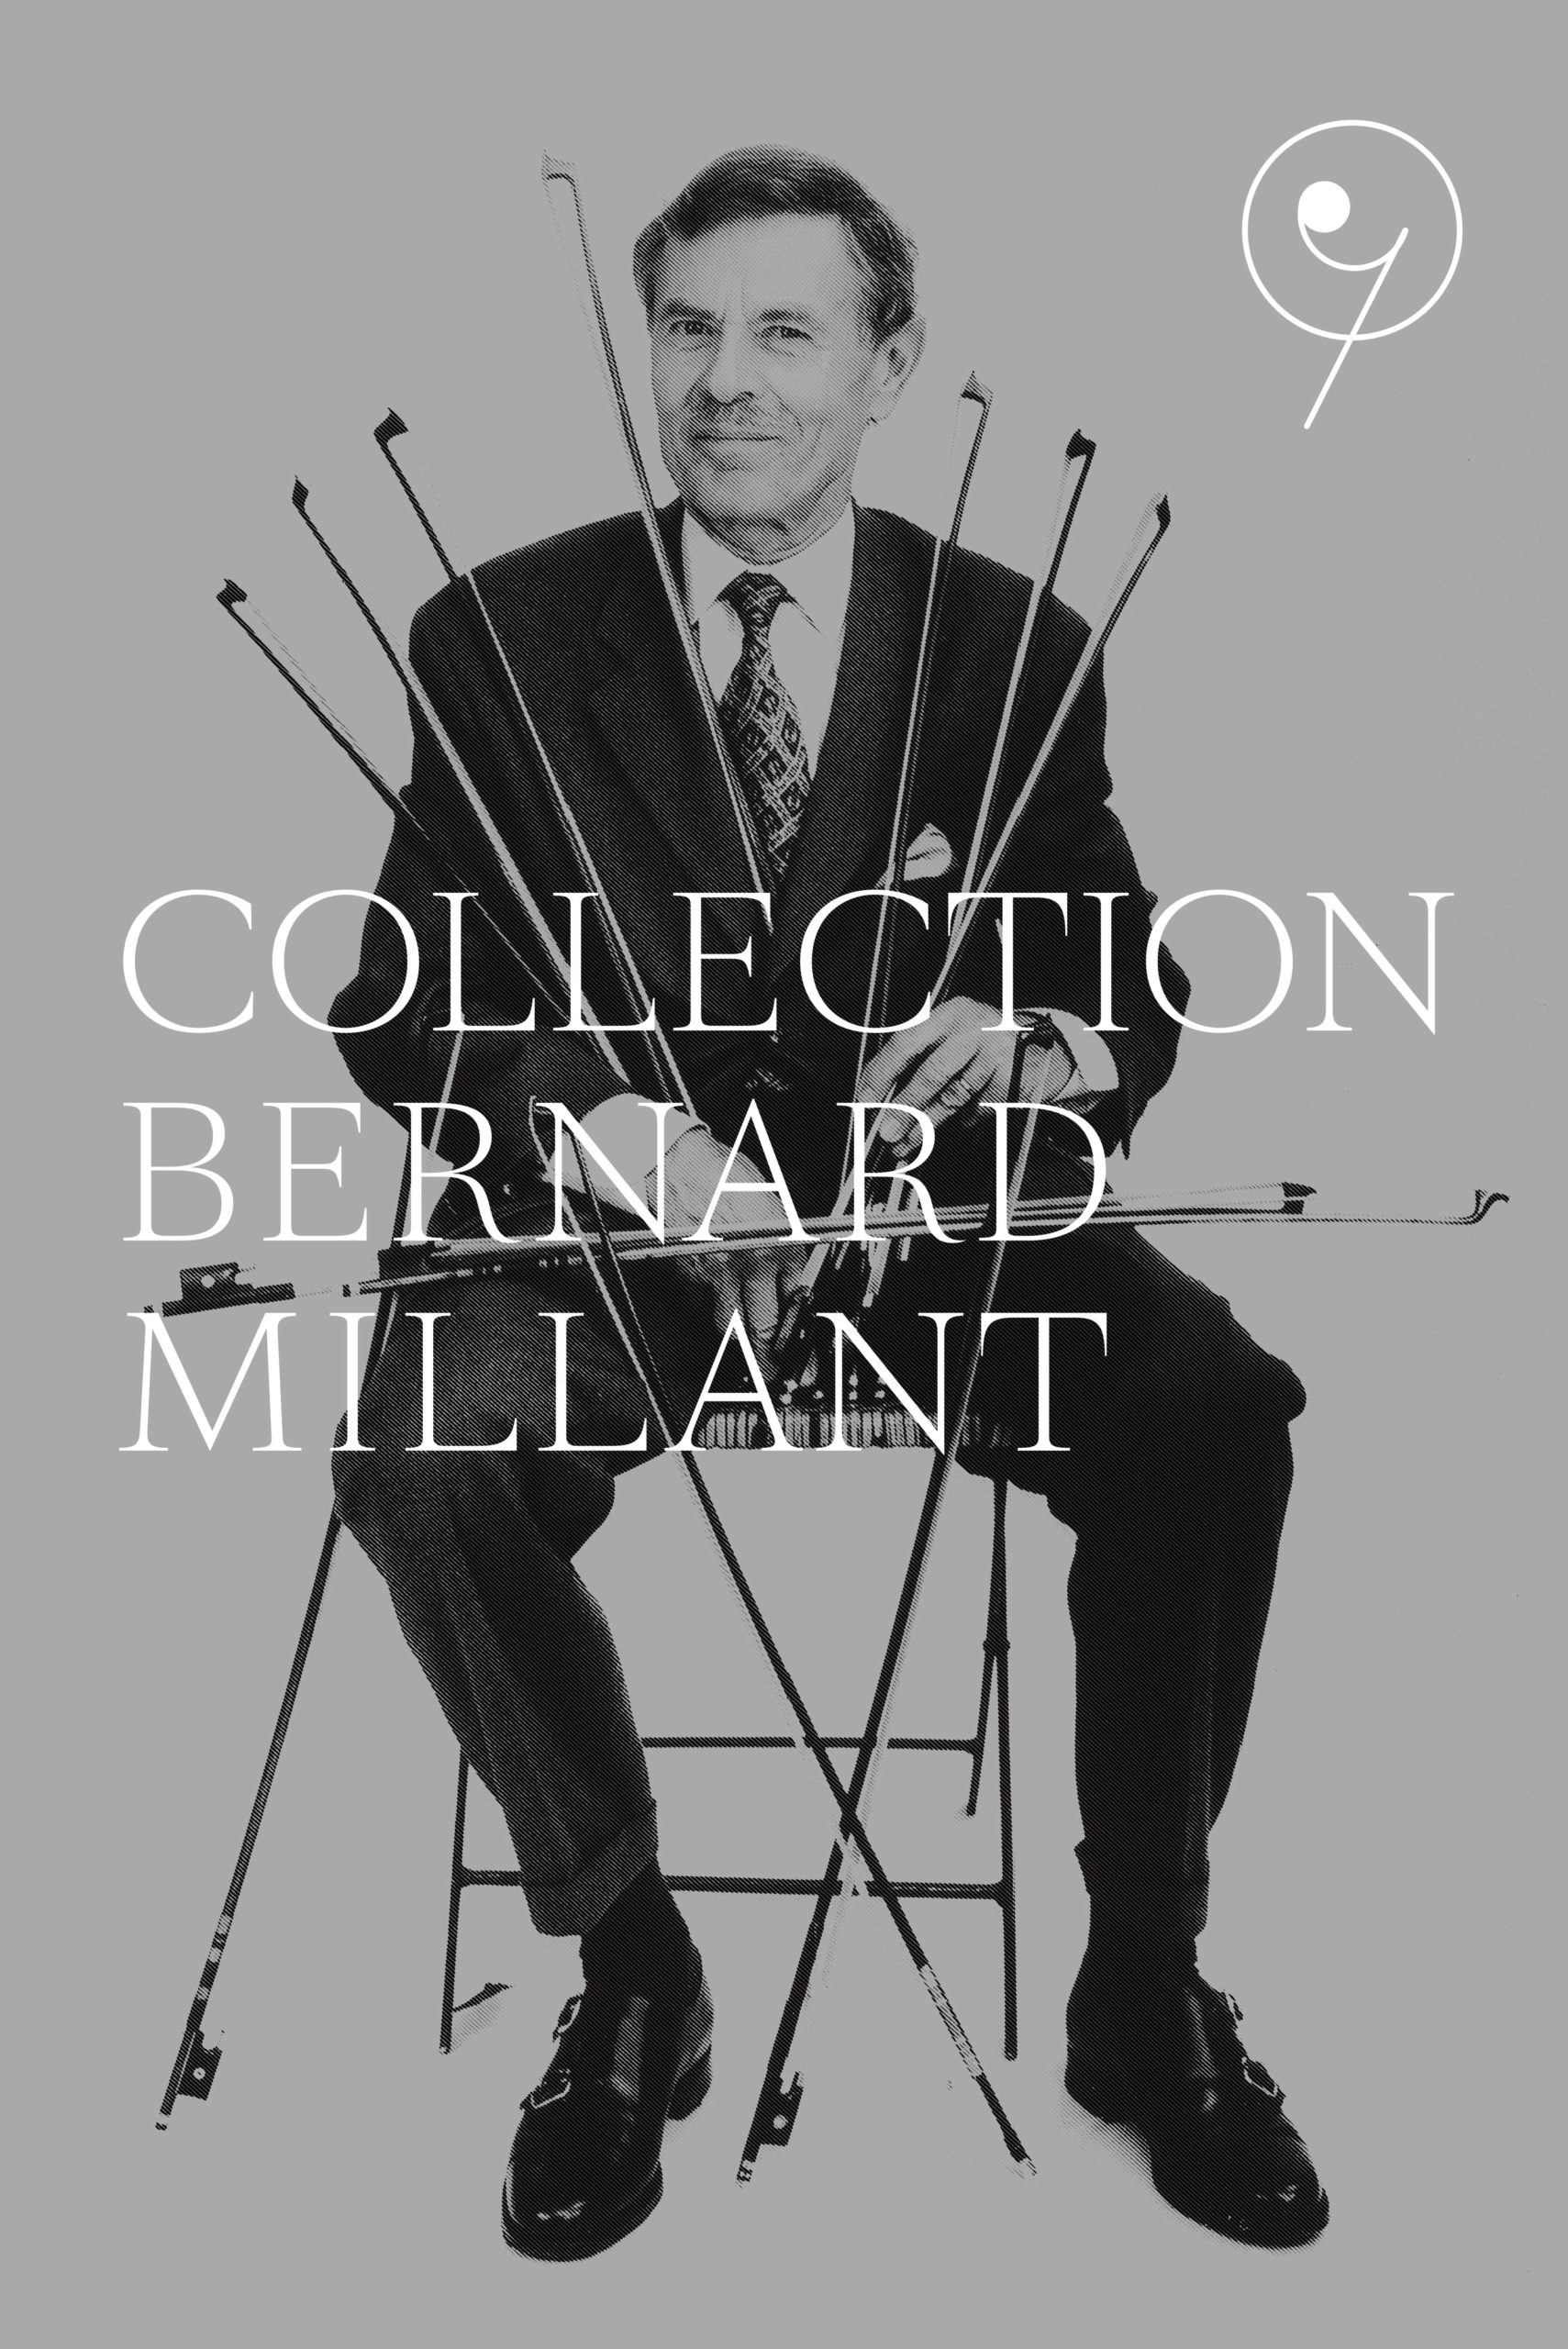 Portrait de Bernard Millant réalisé par Guy Vivien en 2000 à Musicora pour le lancement du livre « L’Archet ».